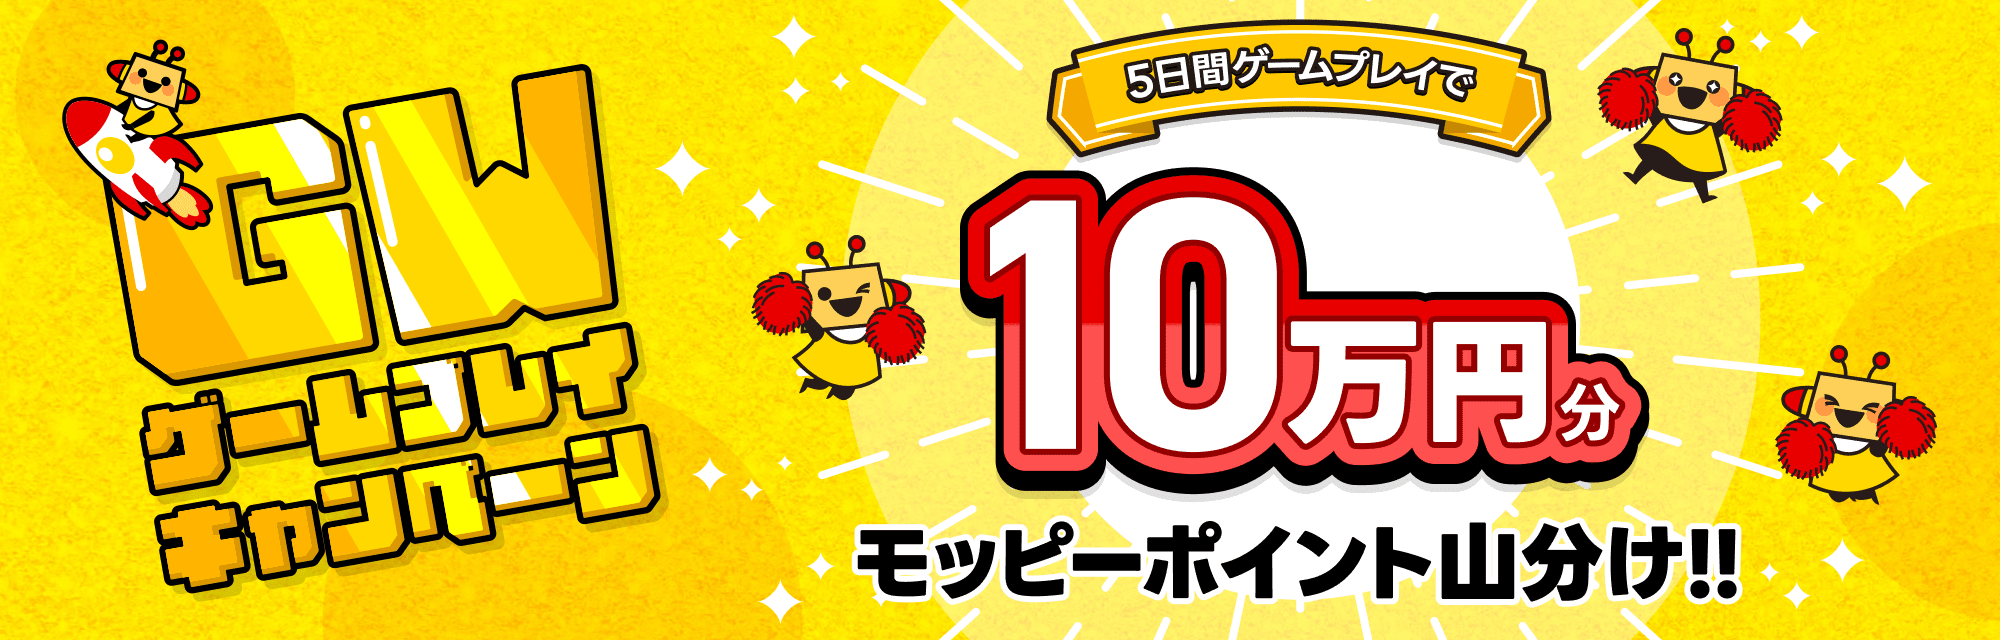 ゴールデンウィークキャンペーン 5日間ゲームプレイで10万円分モッピーポイント山分け!